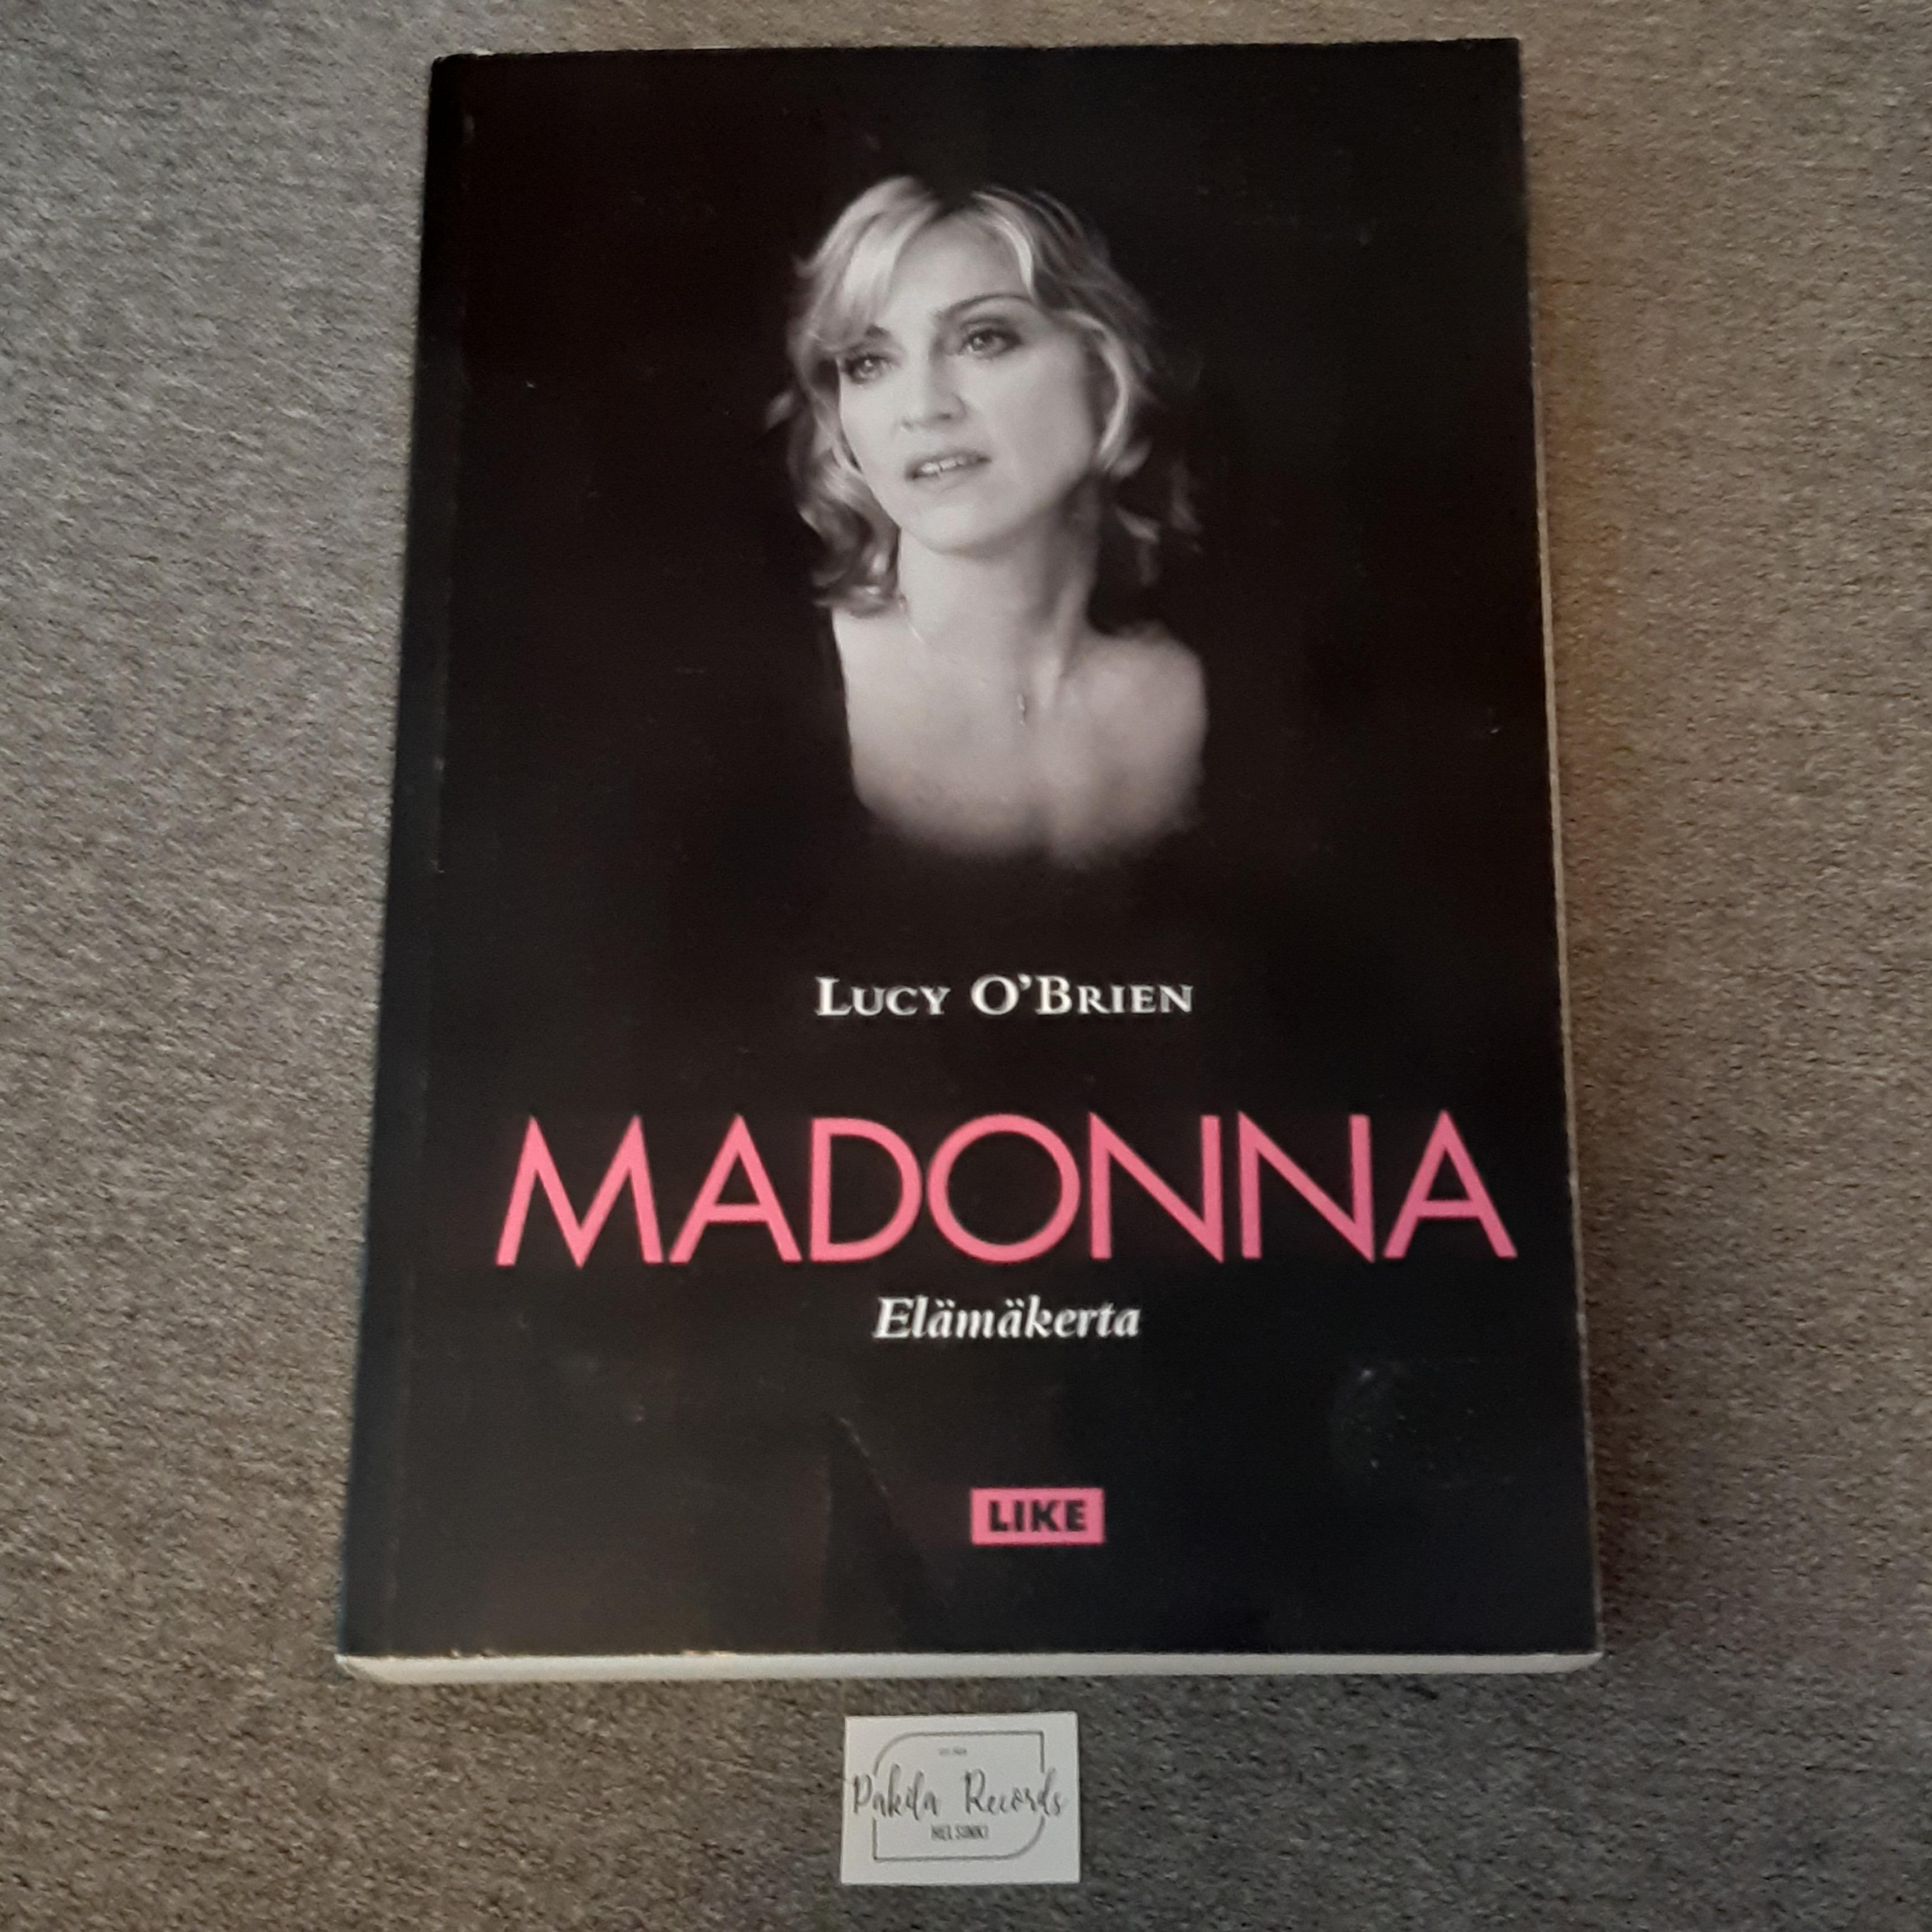 Madonna, Elämäkerta - Lucy O'Brien - Kirja (käytetty)